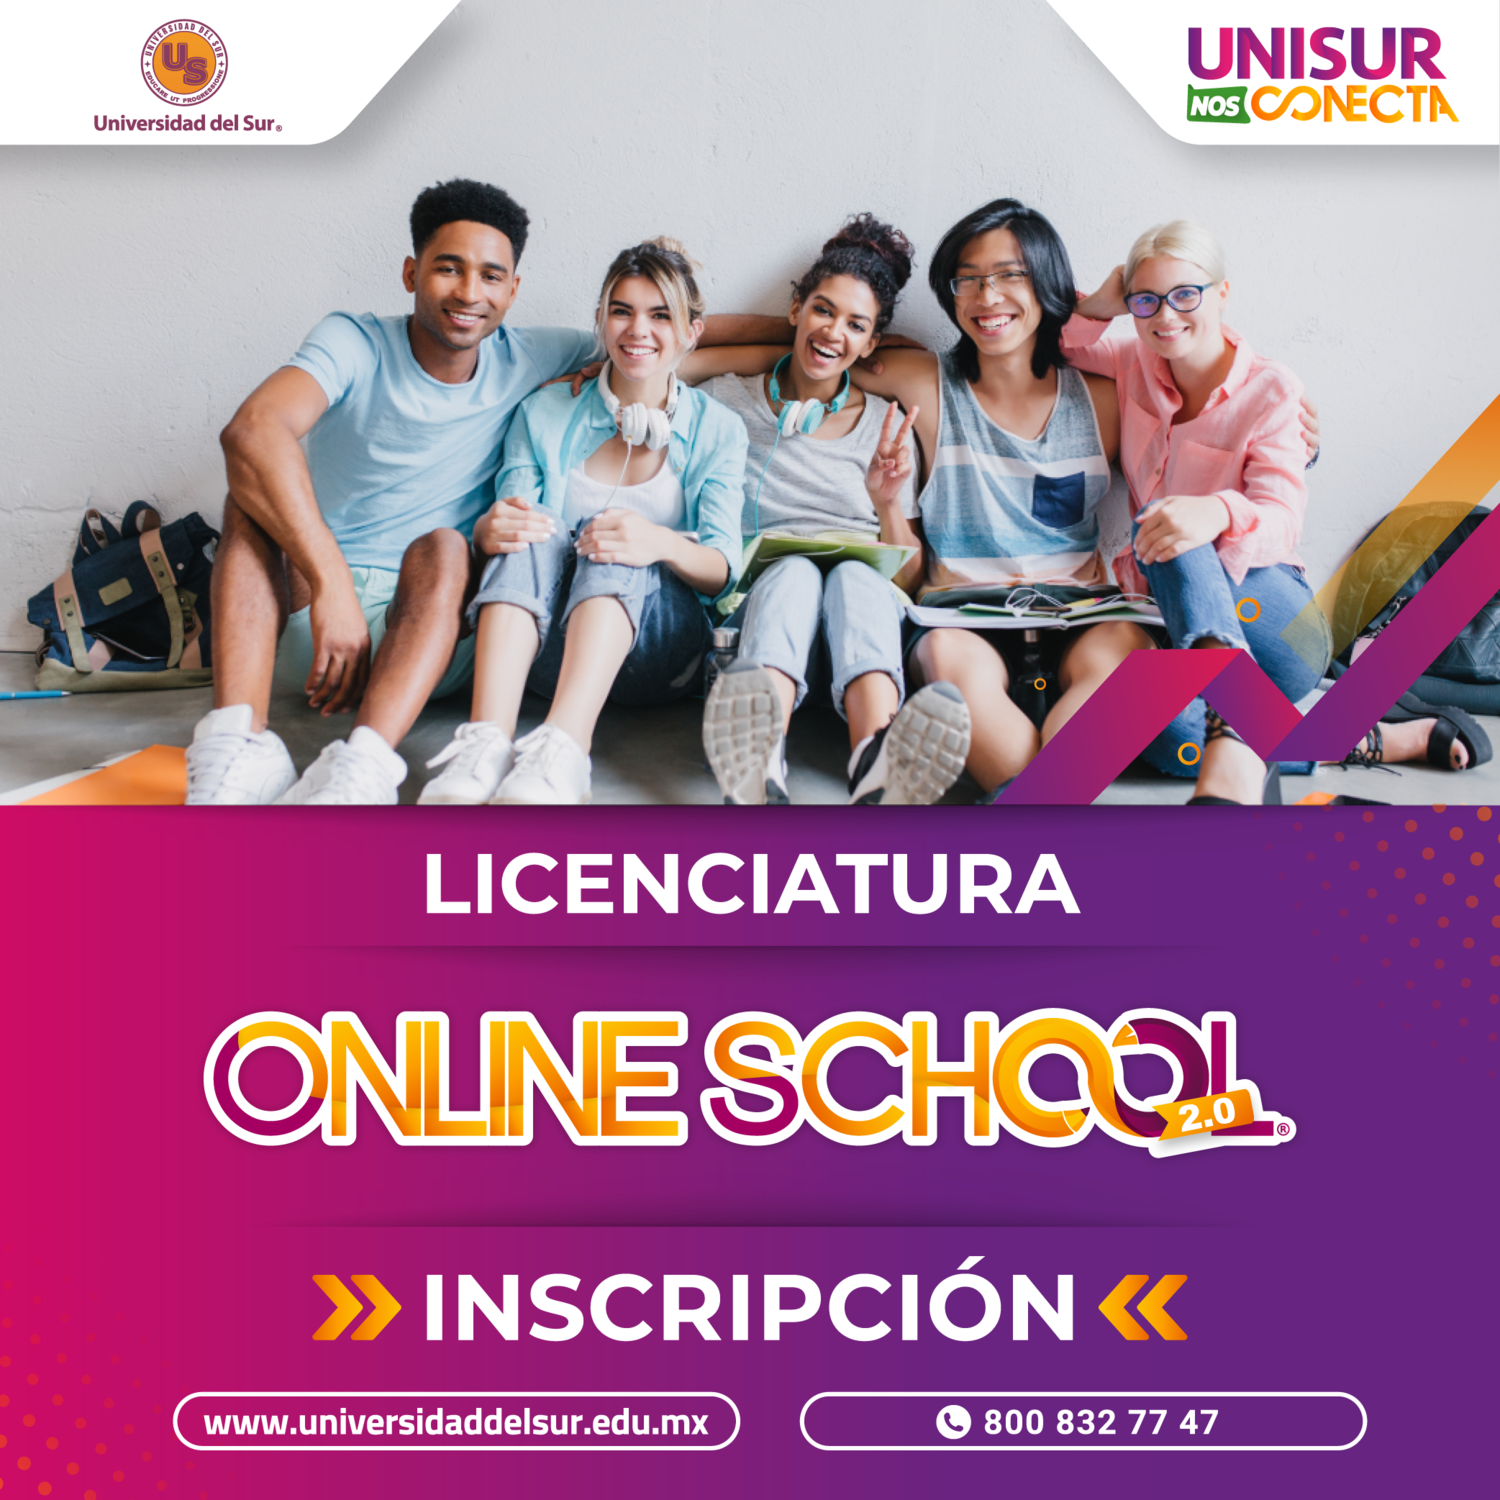 Licenciatura Online School 2.0 Inscripción